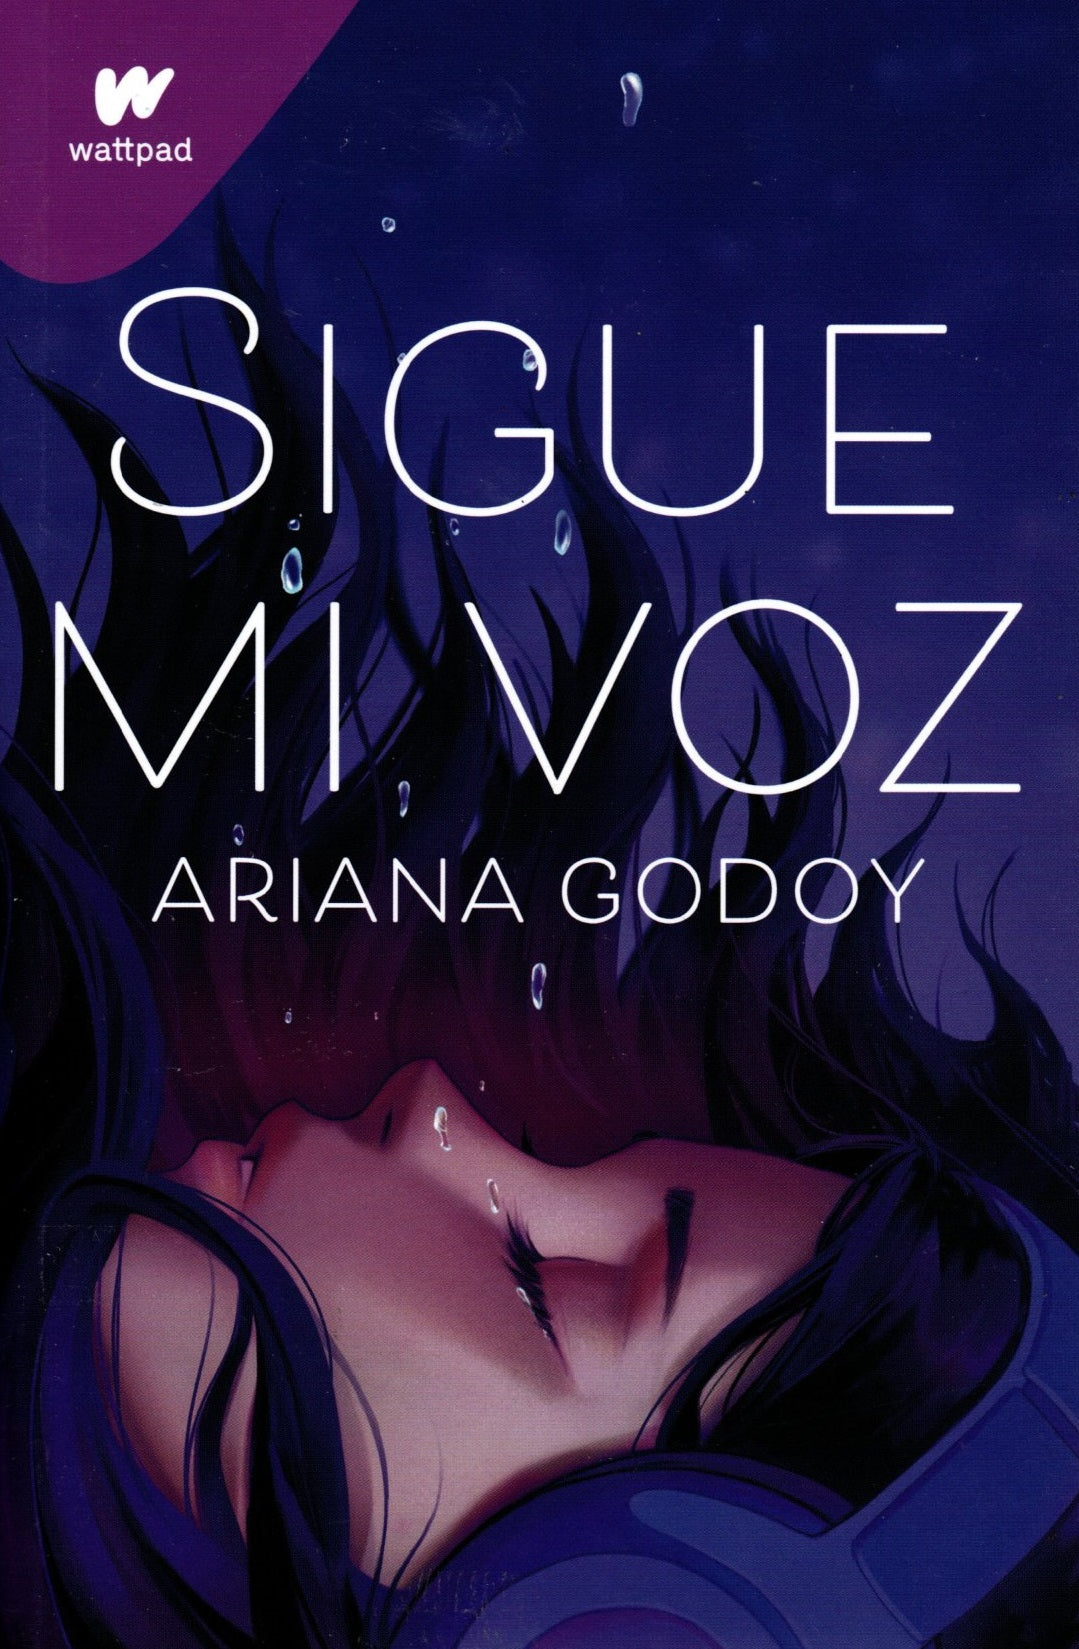 Libro Ariana Godoy-Sigue mi voz